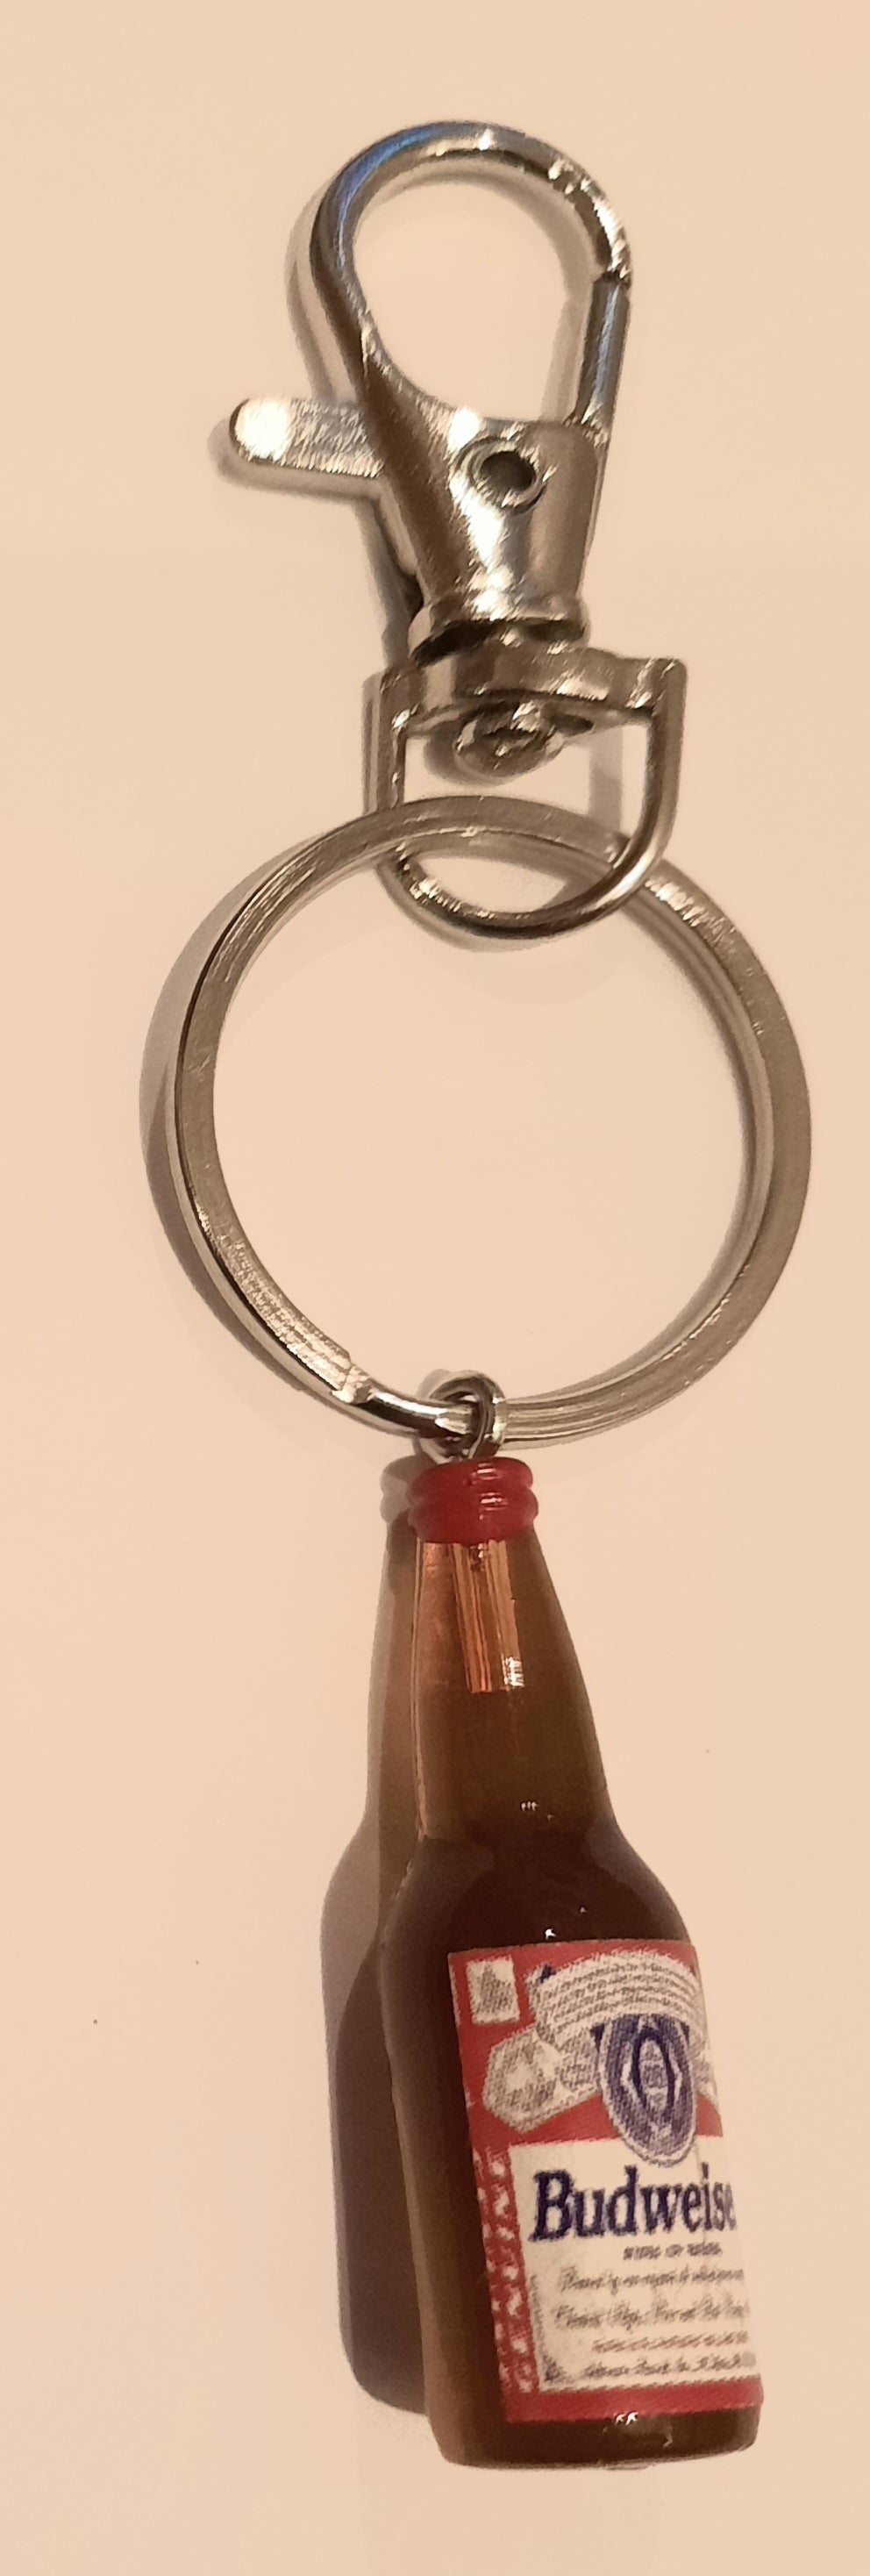 Budweiser key ring